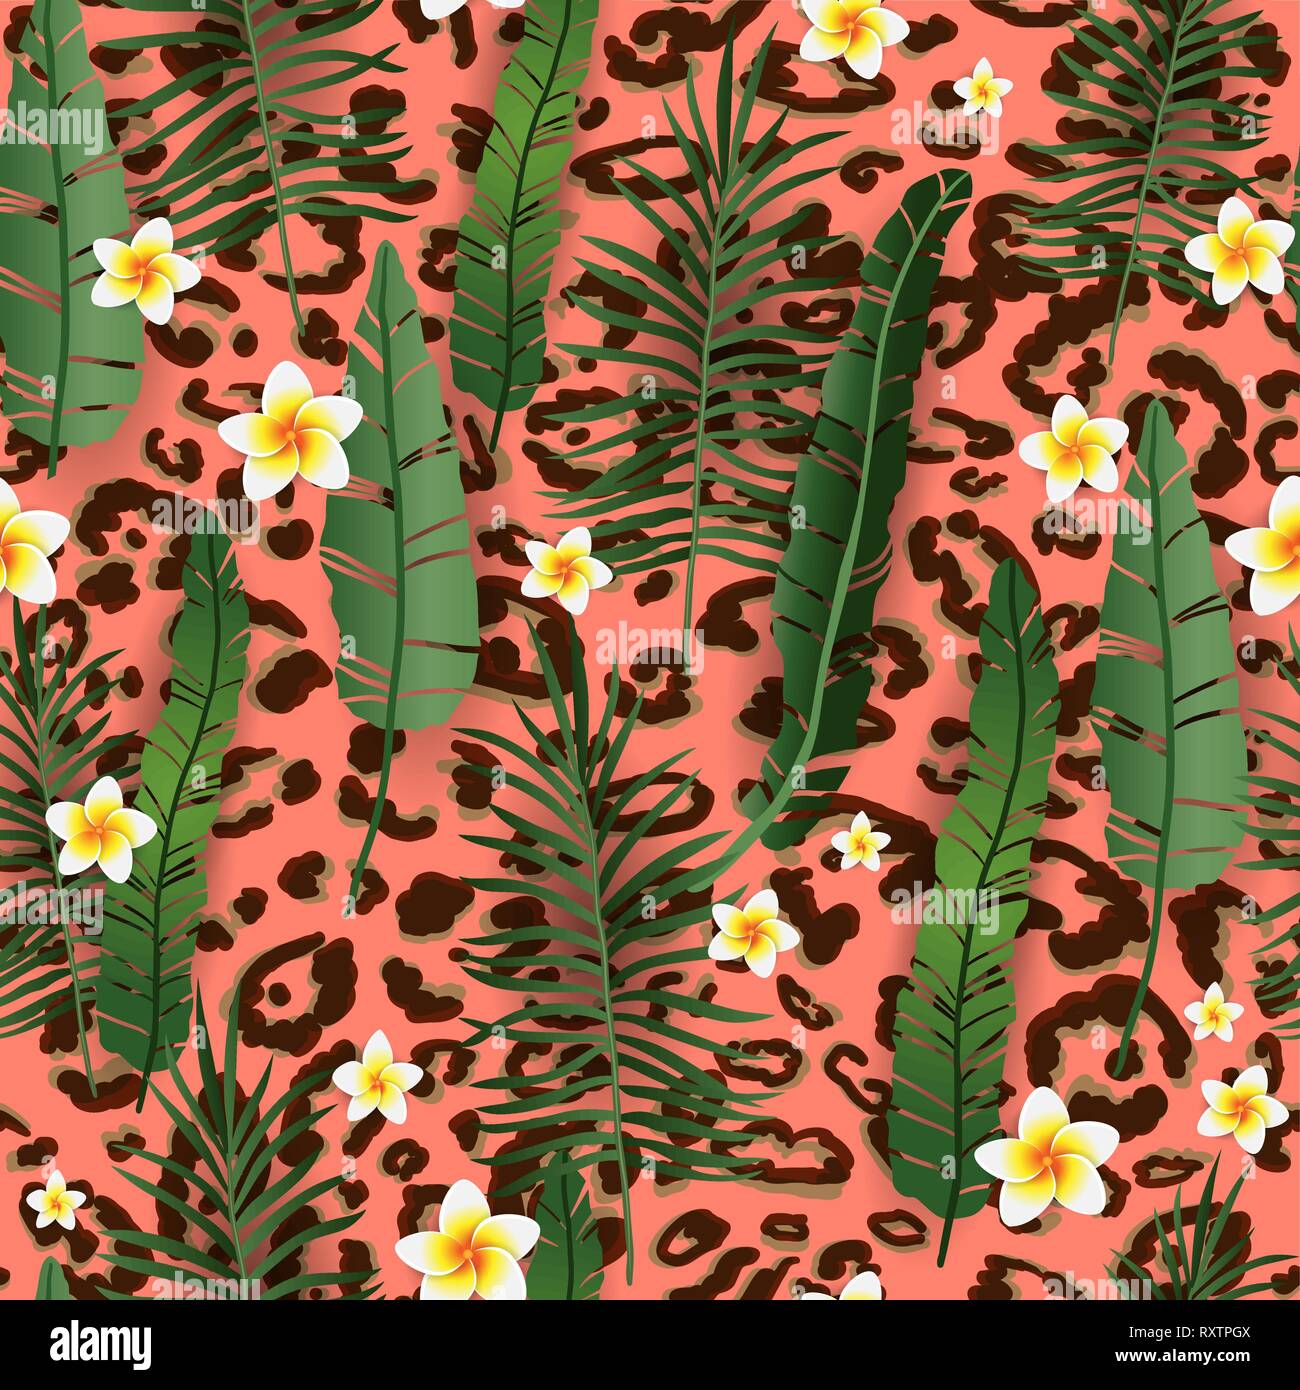 Nahtlose Muster exotische Floral Background. Tropische Blumen und Blätter auf lebende Korallen Kulisse. Cartoon Grün Design für Einladung, Flyer, Plakat oder Karte. Stock Vektor